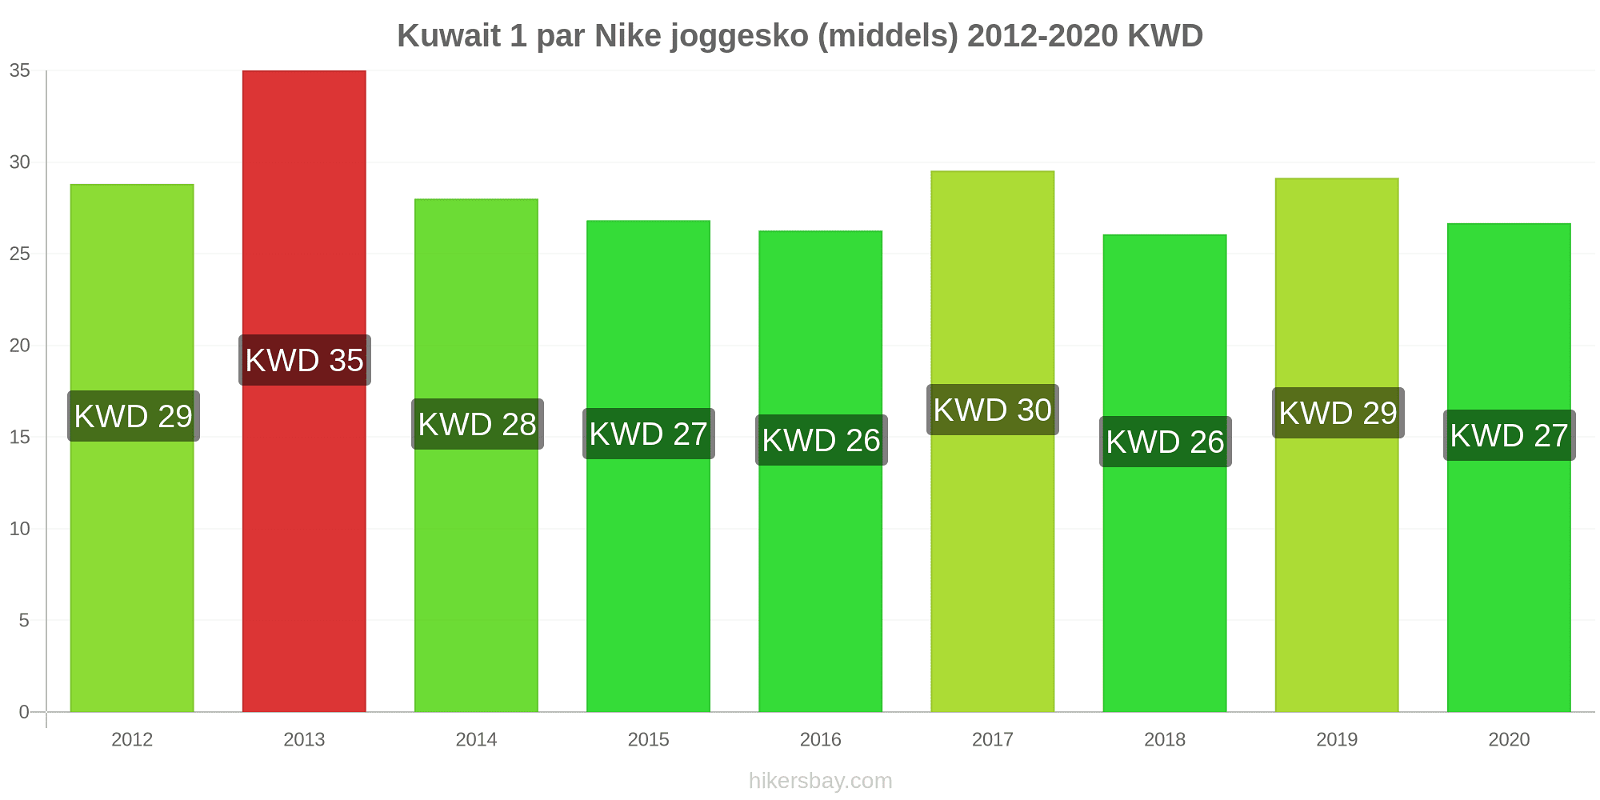 Kuwait prisendringer 1 par Nike joggesko (middels) hikersbay.com